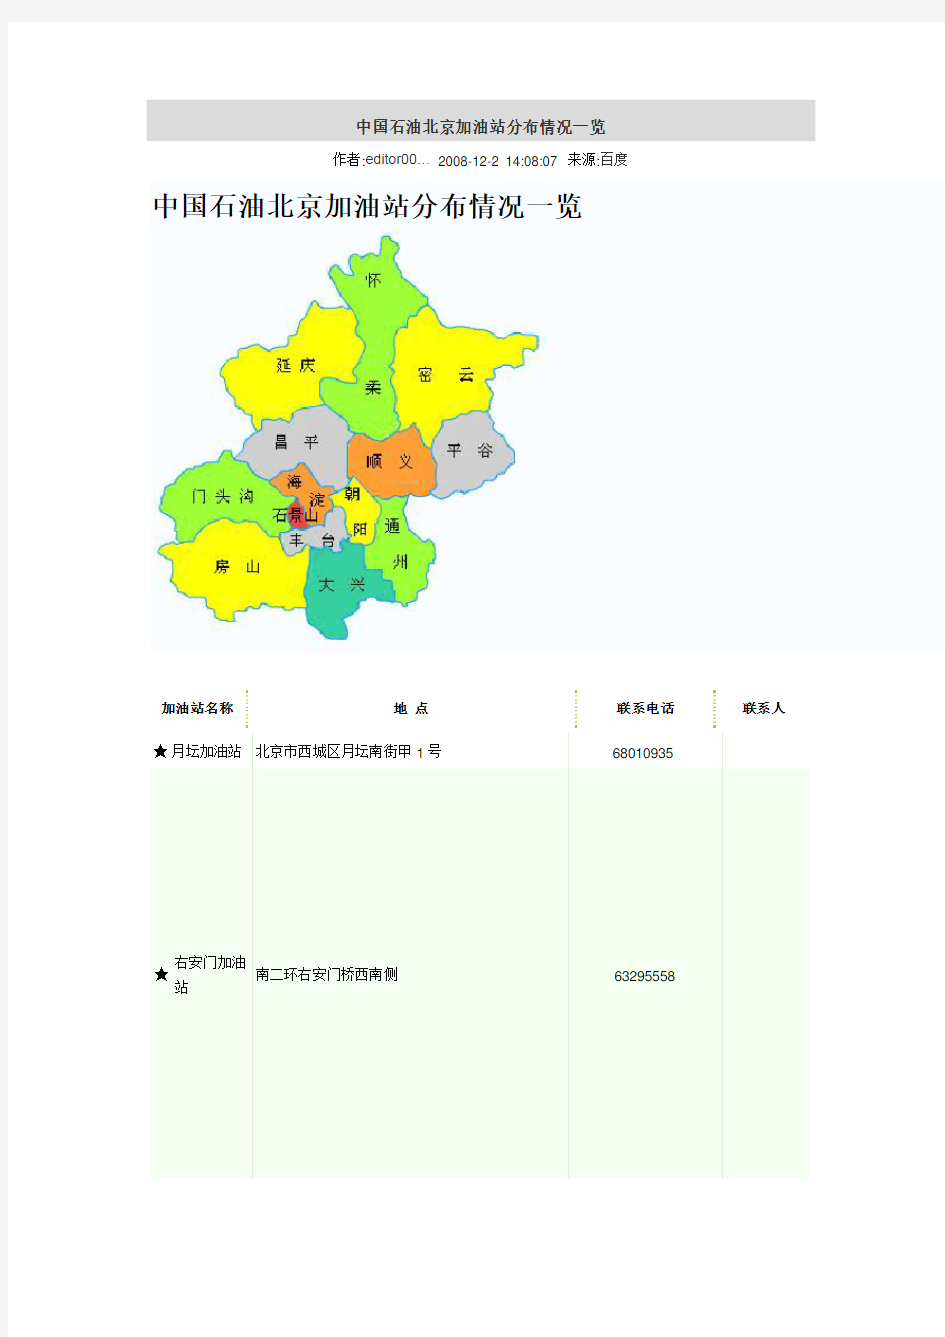 中国石油北京加油站分布情况一览